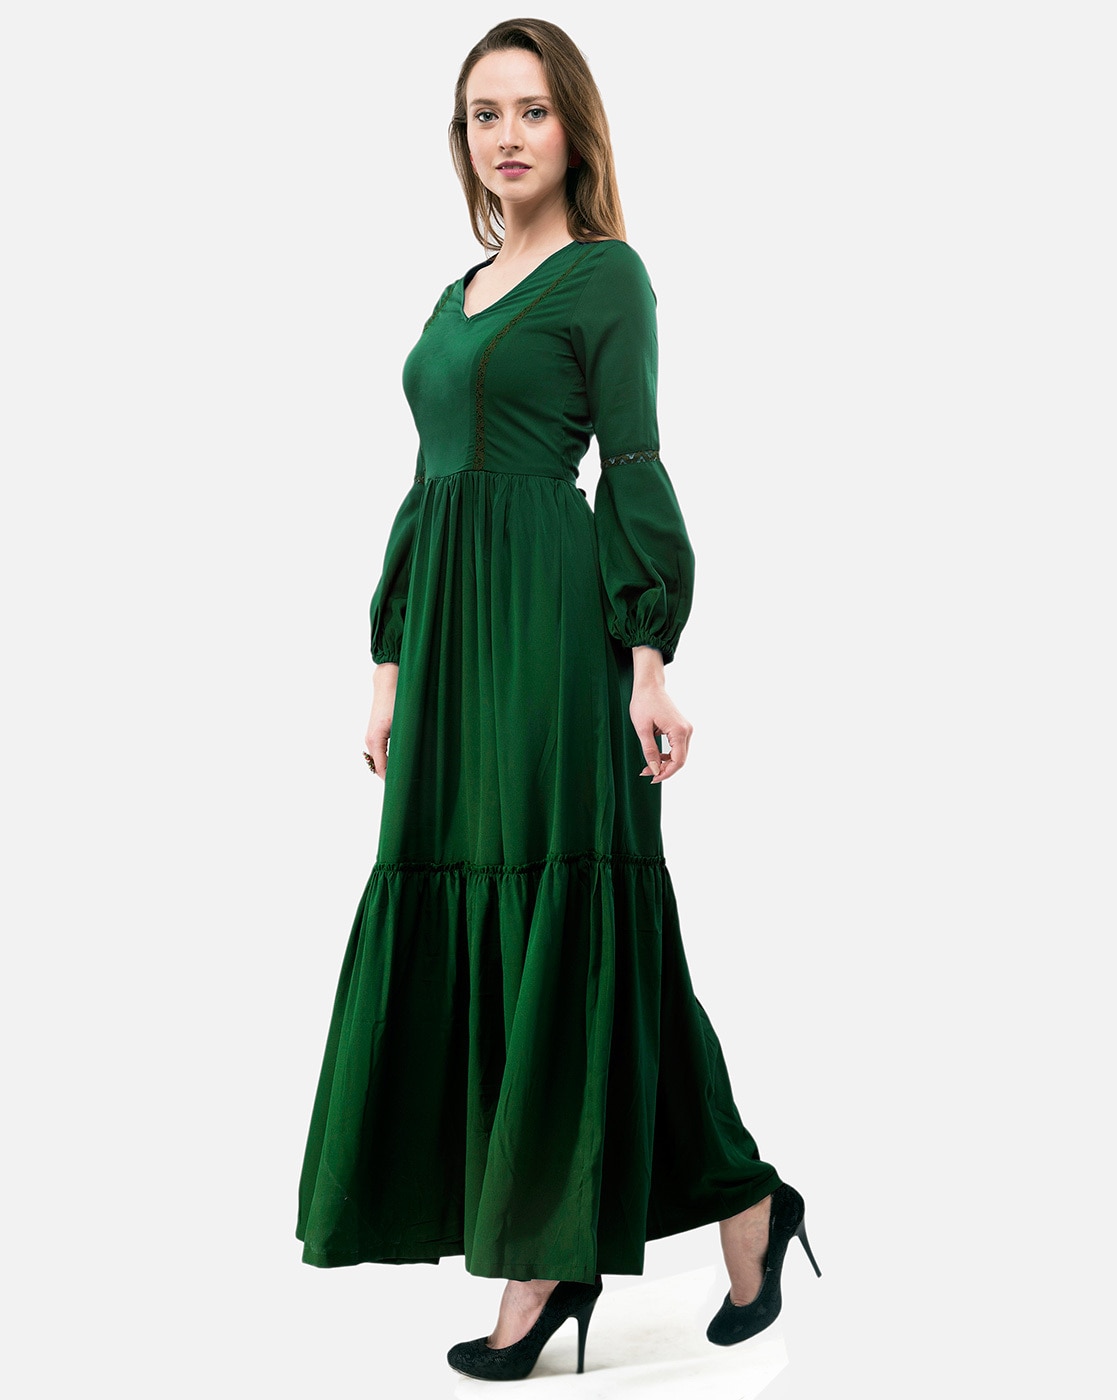 Buy Teal Green Midi Dress Online - Label Ritu Kumar India Store View